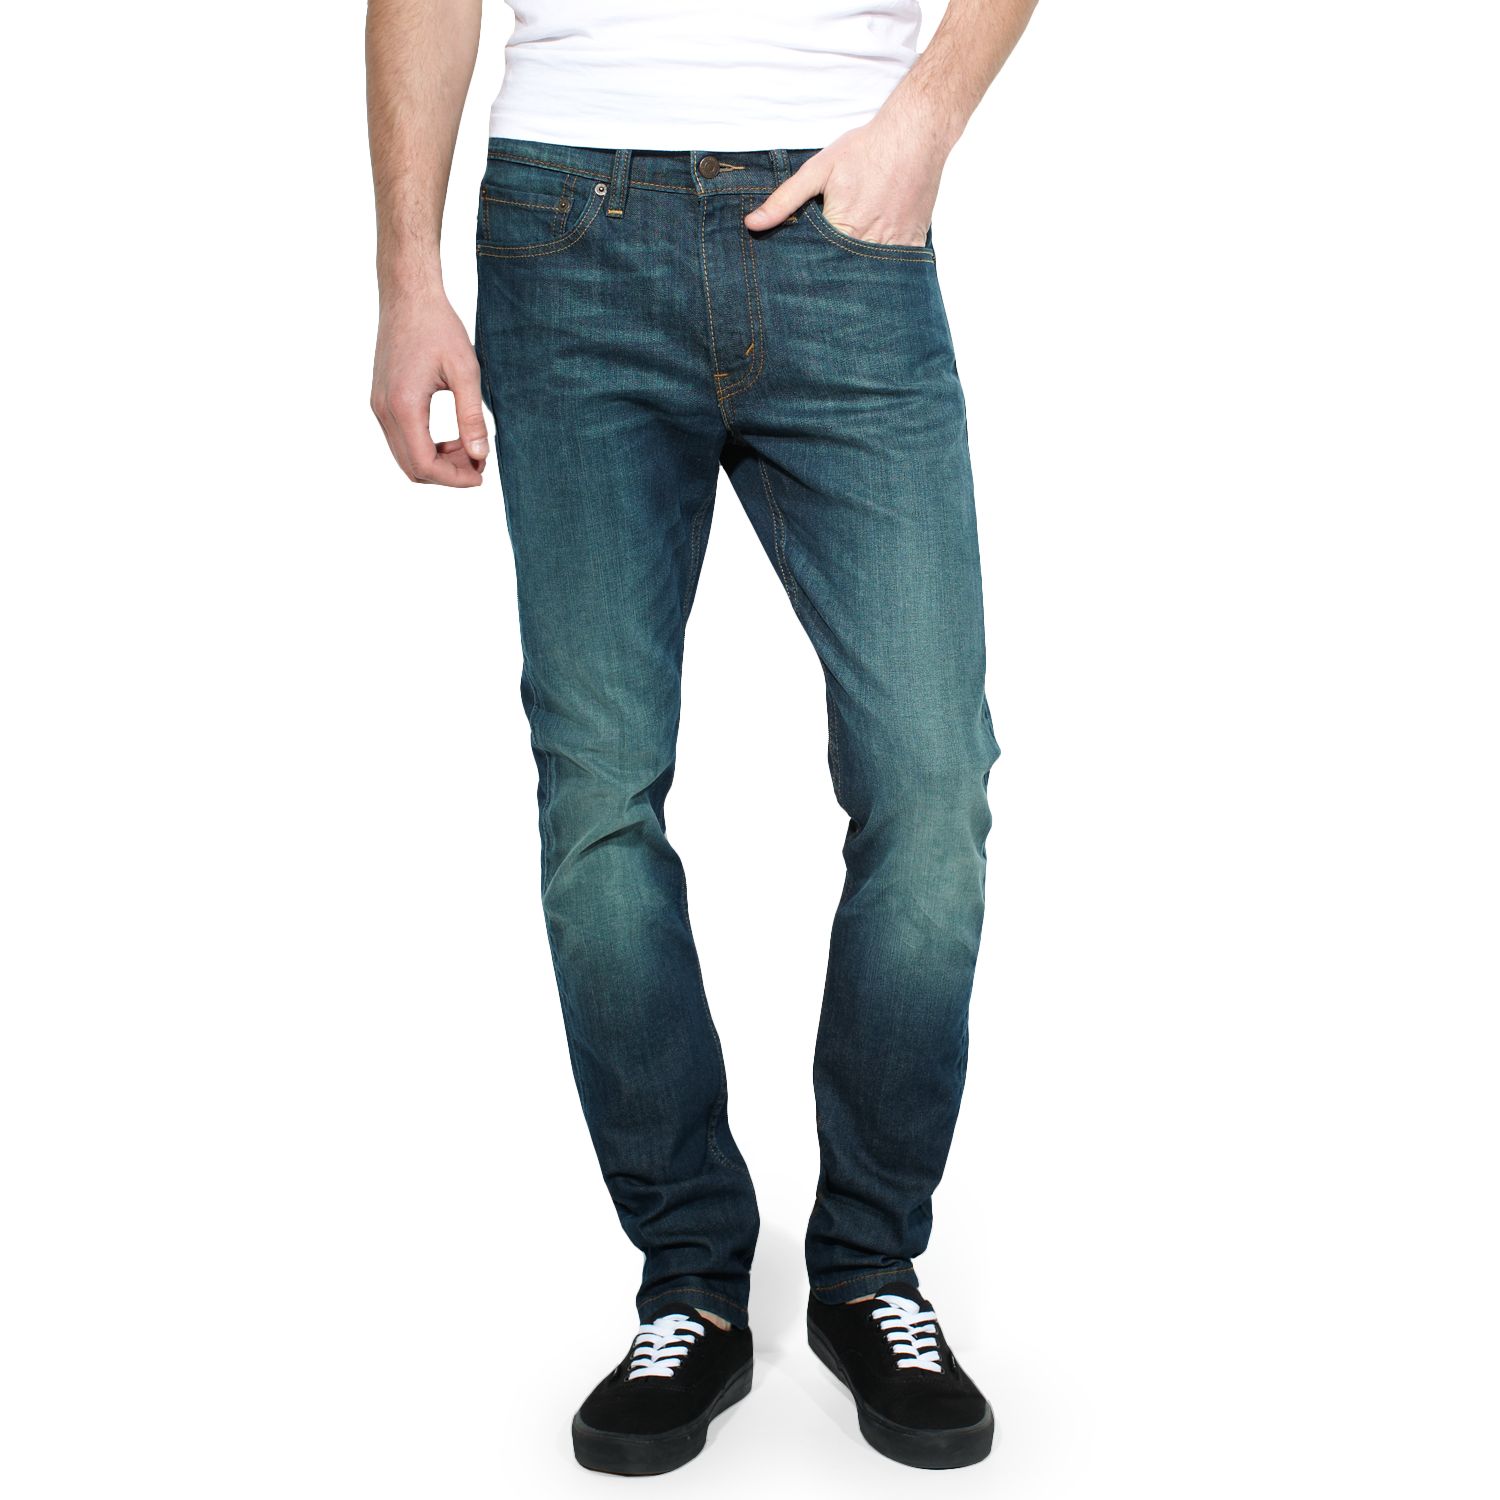 Levi's 510 Skinny Jeans - Men